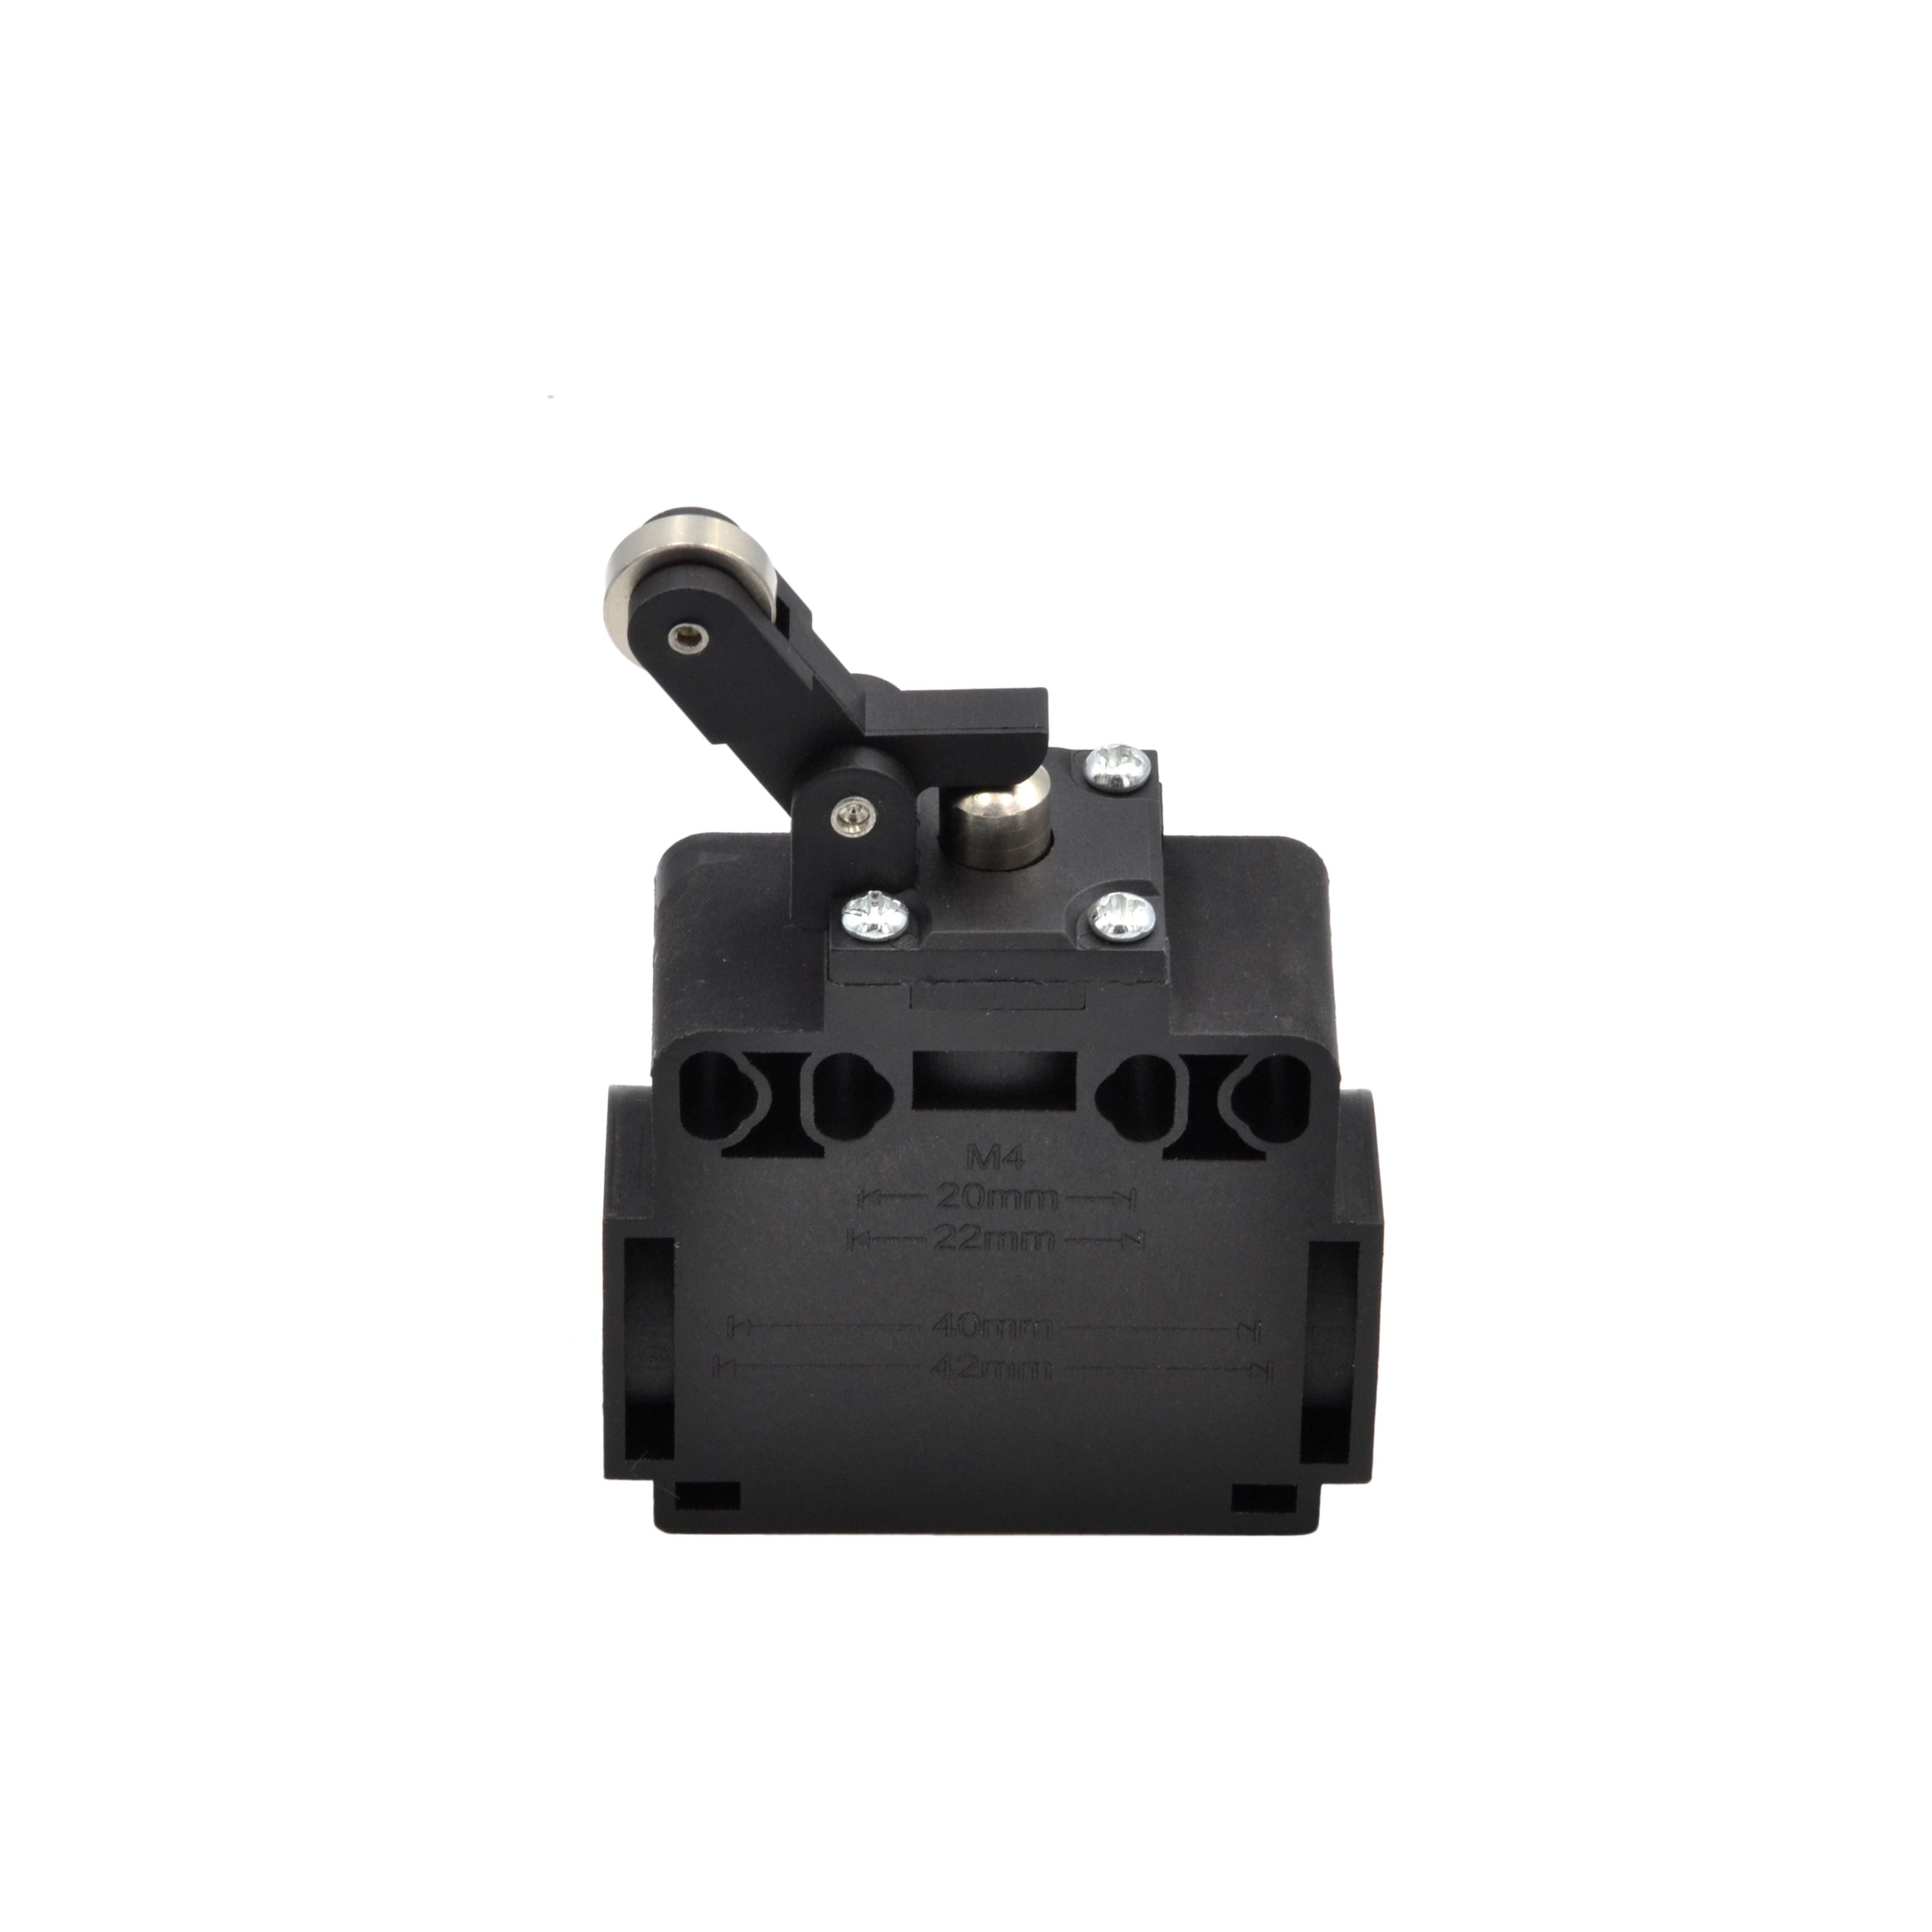 XCK-T127 Plastic Type, Adjustable Arm Limit Switch